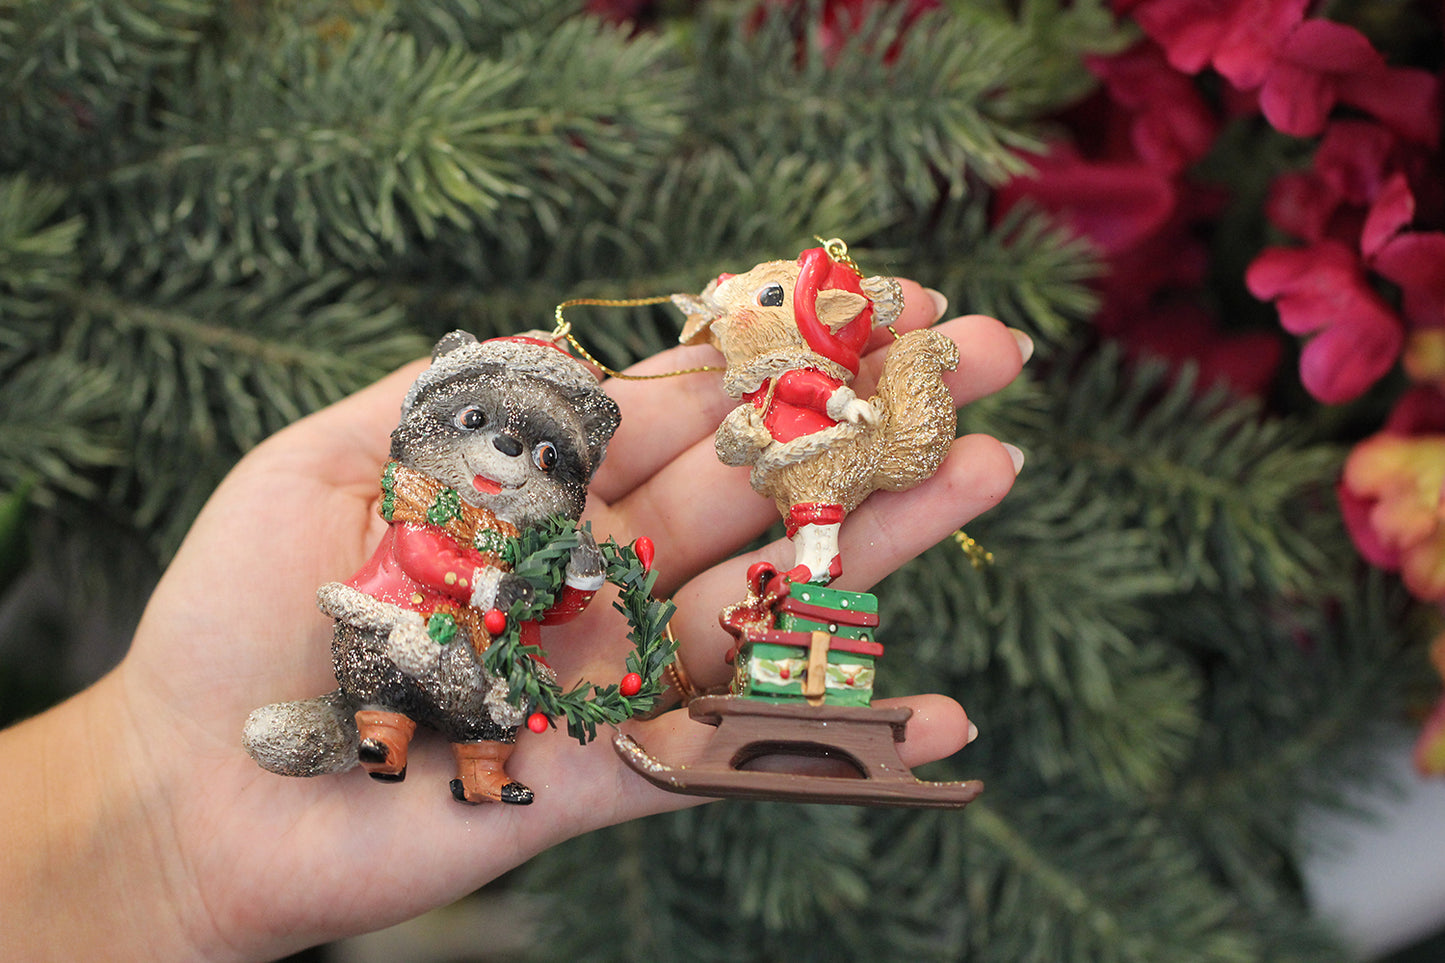 Viv! Christmas Kerstornament - eekhoorn en wasbeer - set van 2 - bruin - 9cm